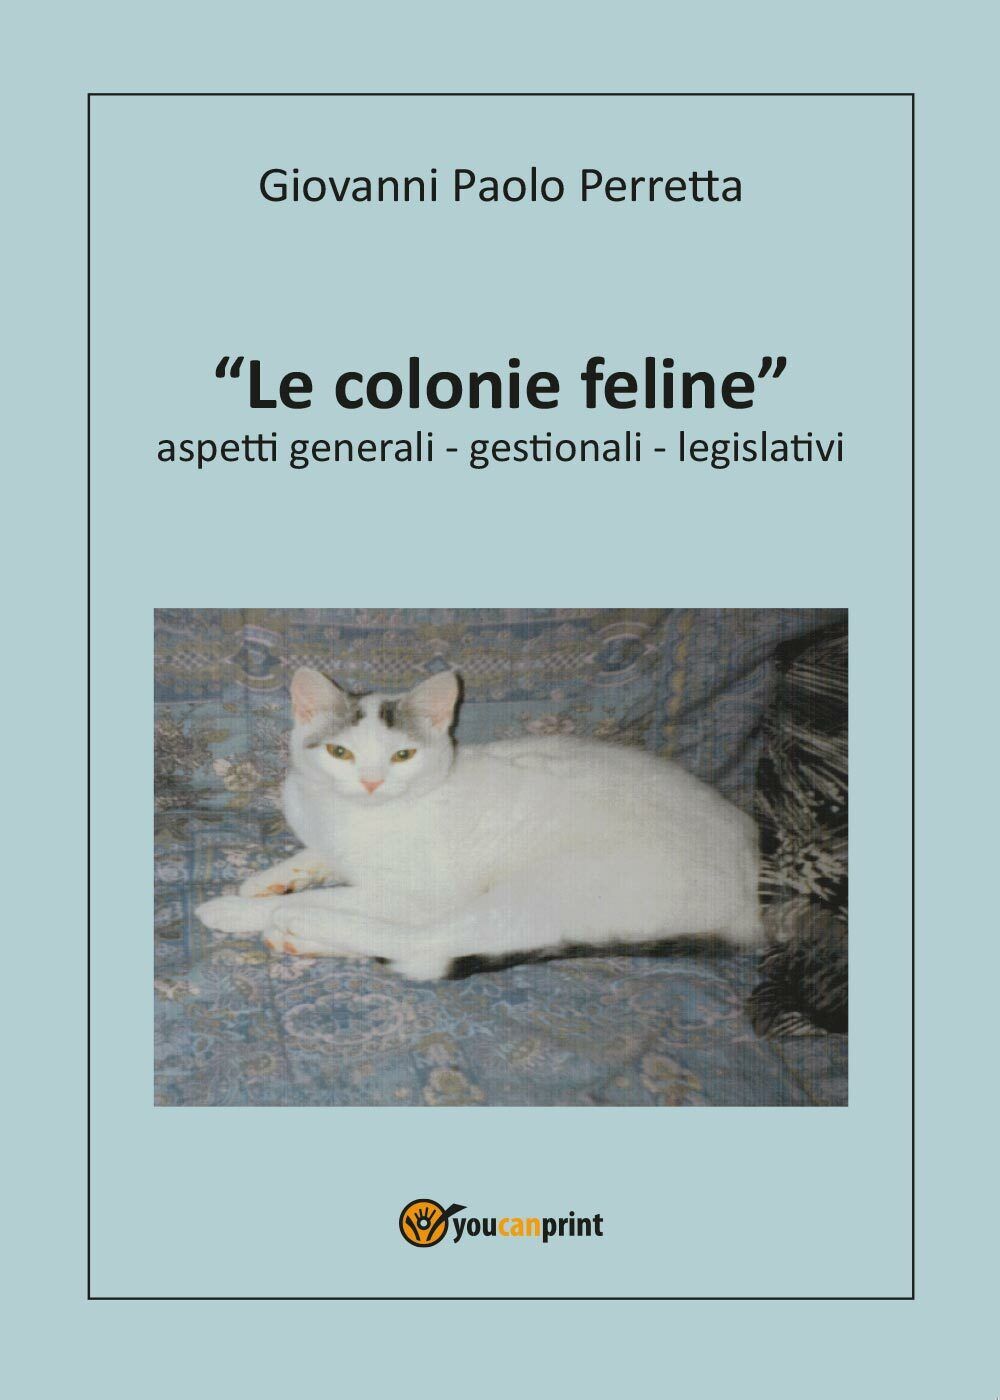 Le colonie feline aspetti generali, gestionali, legislativi di Giovanni P. Perre libro usato